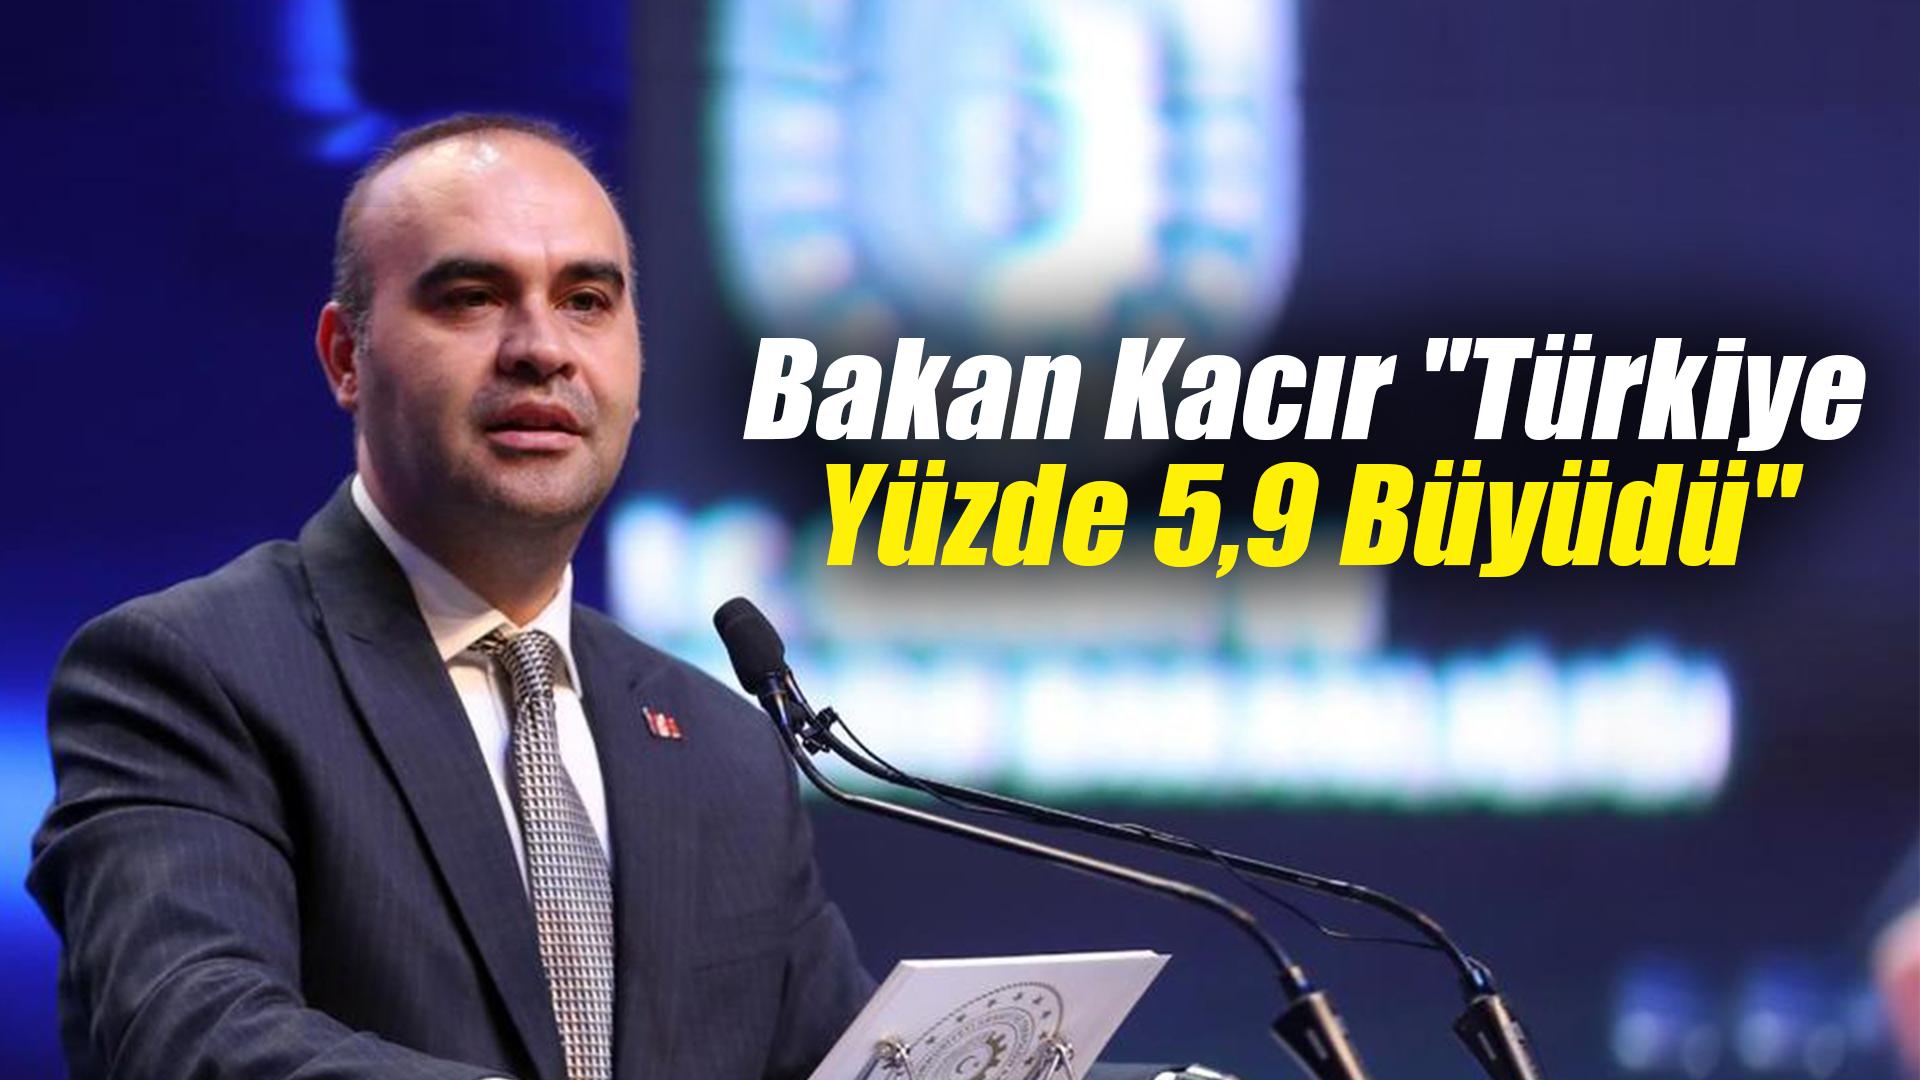 Bakan Kacır "Türkiye yüzde 5,9 büyüdü"